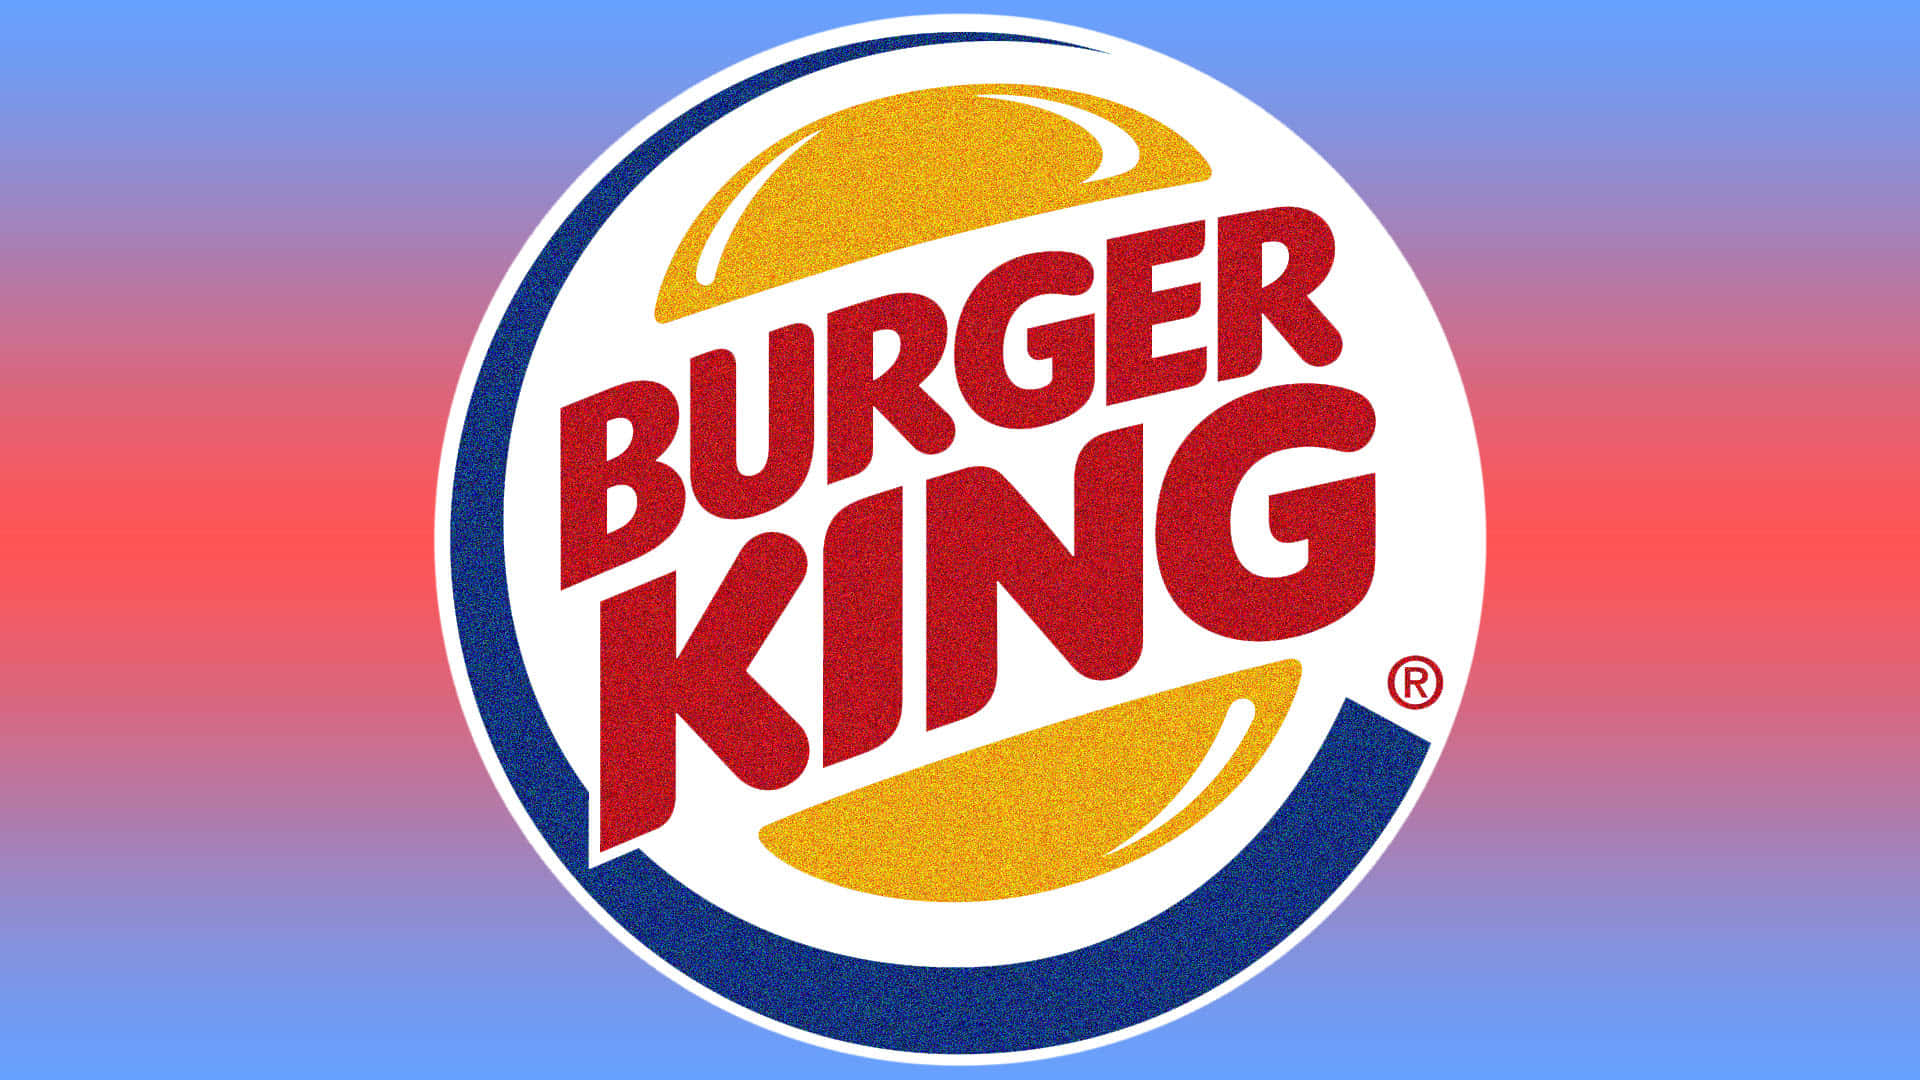 Vienia Gustare Hamburger Appena Cucinati Da Burger King.